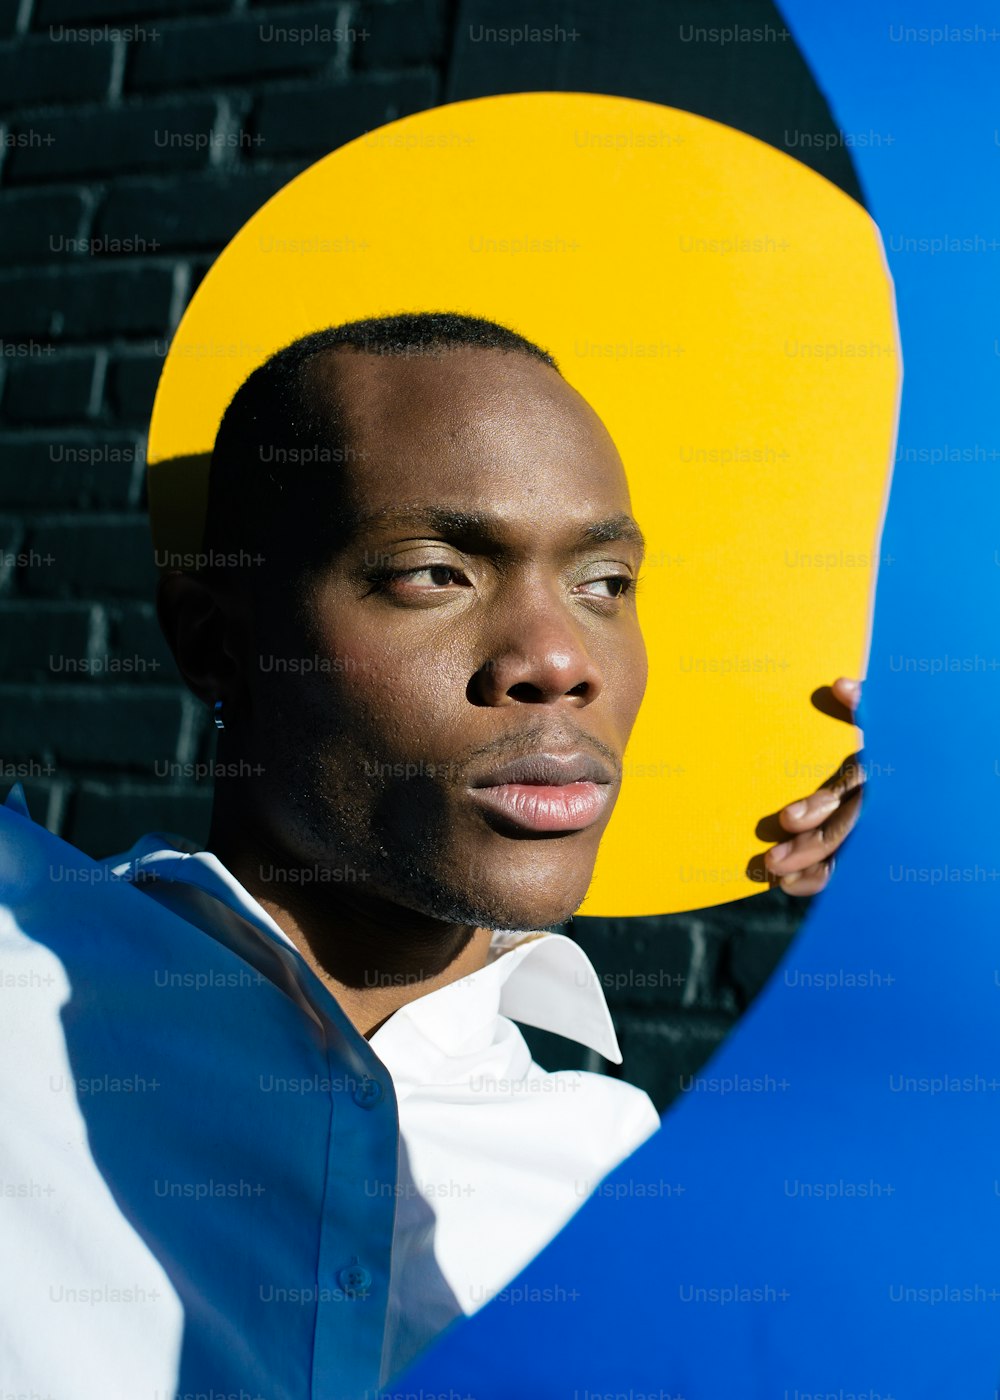 Un homme tenant un gros objet jaune et bleu